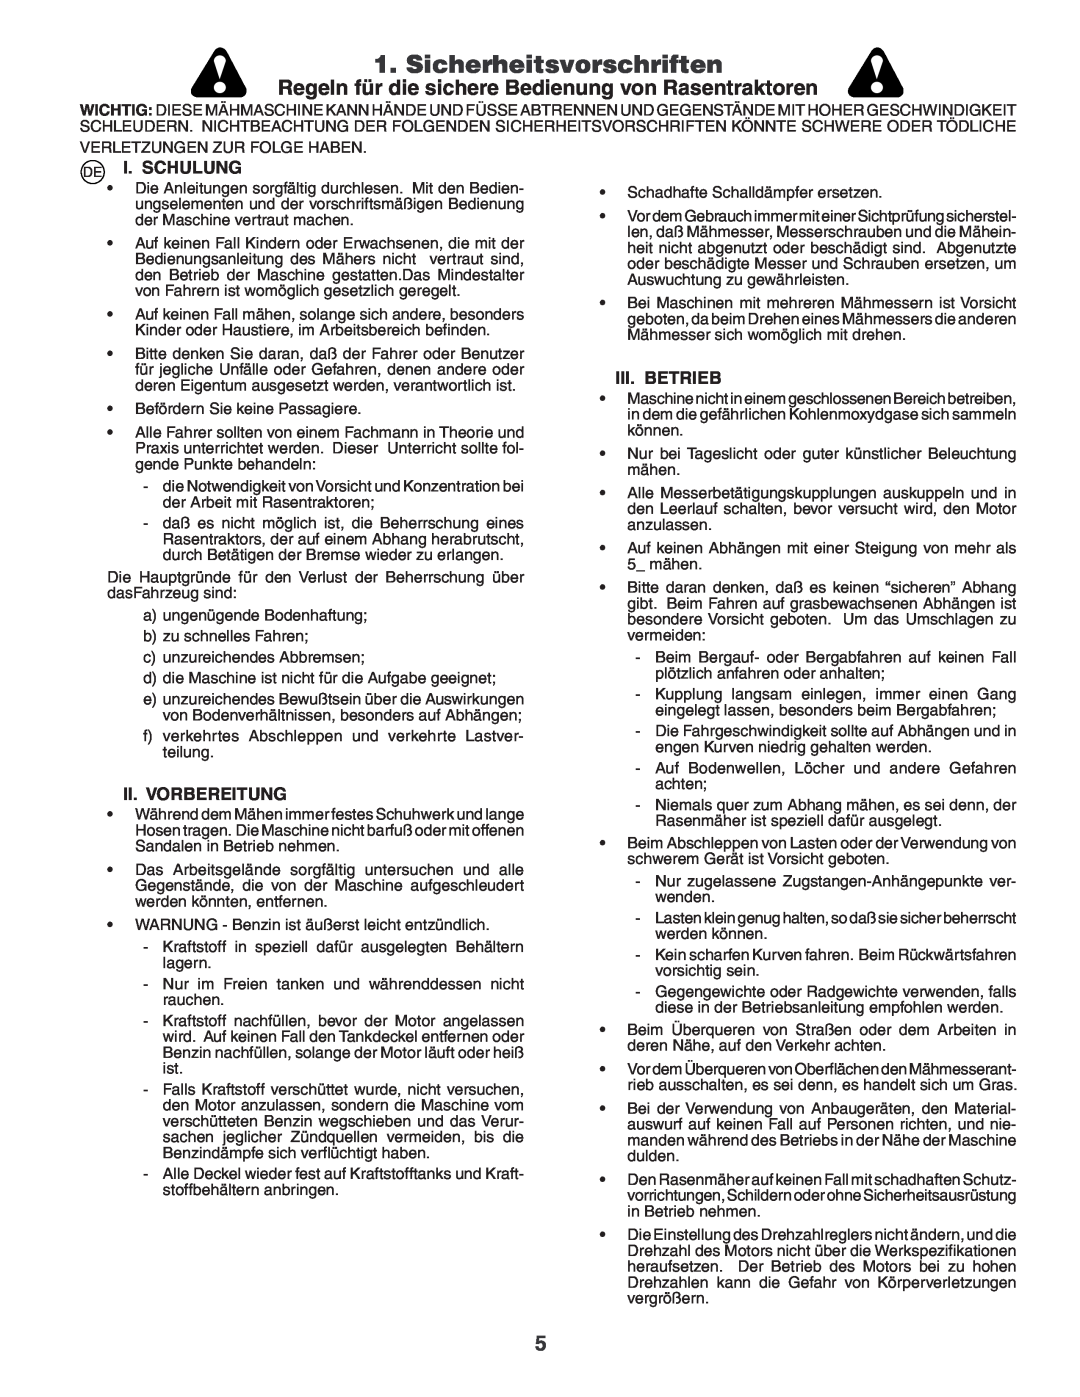 Husqvarna YTH180XP Sicherheitsvorschriften, Regeln für die sichere Bedienung von Rasentraktoren, I. Schulung, Iii. Betrieb 